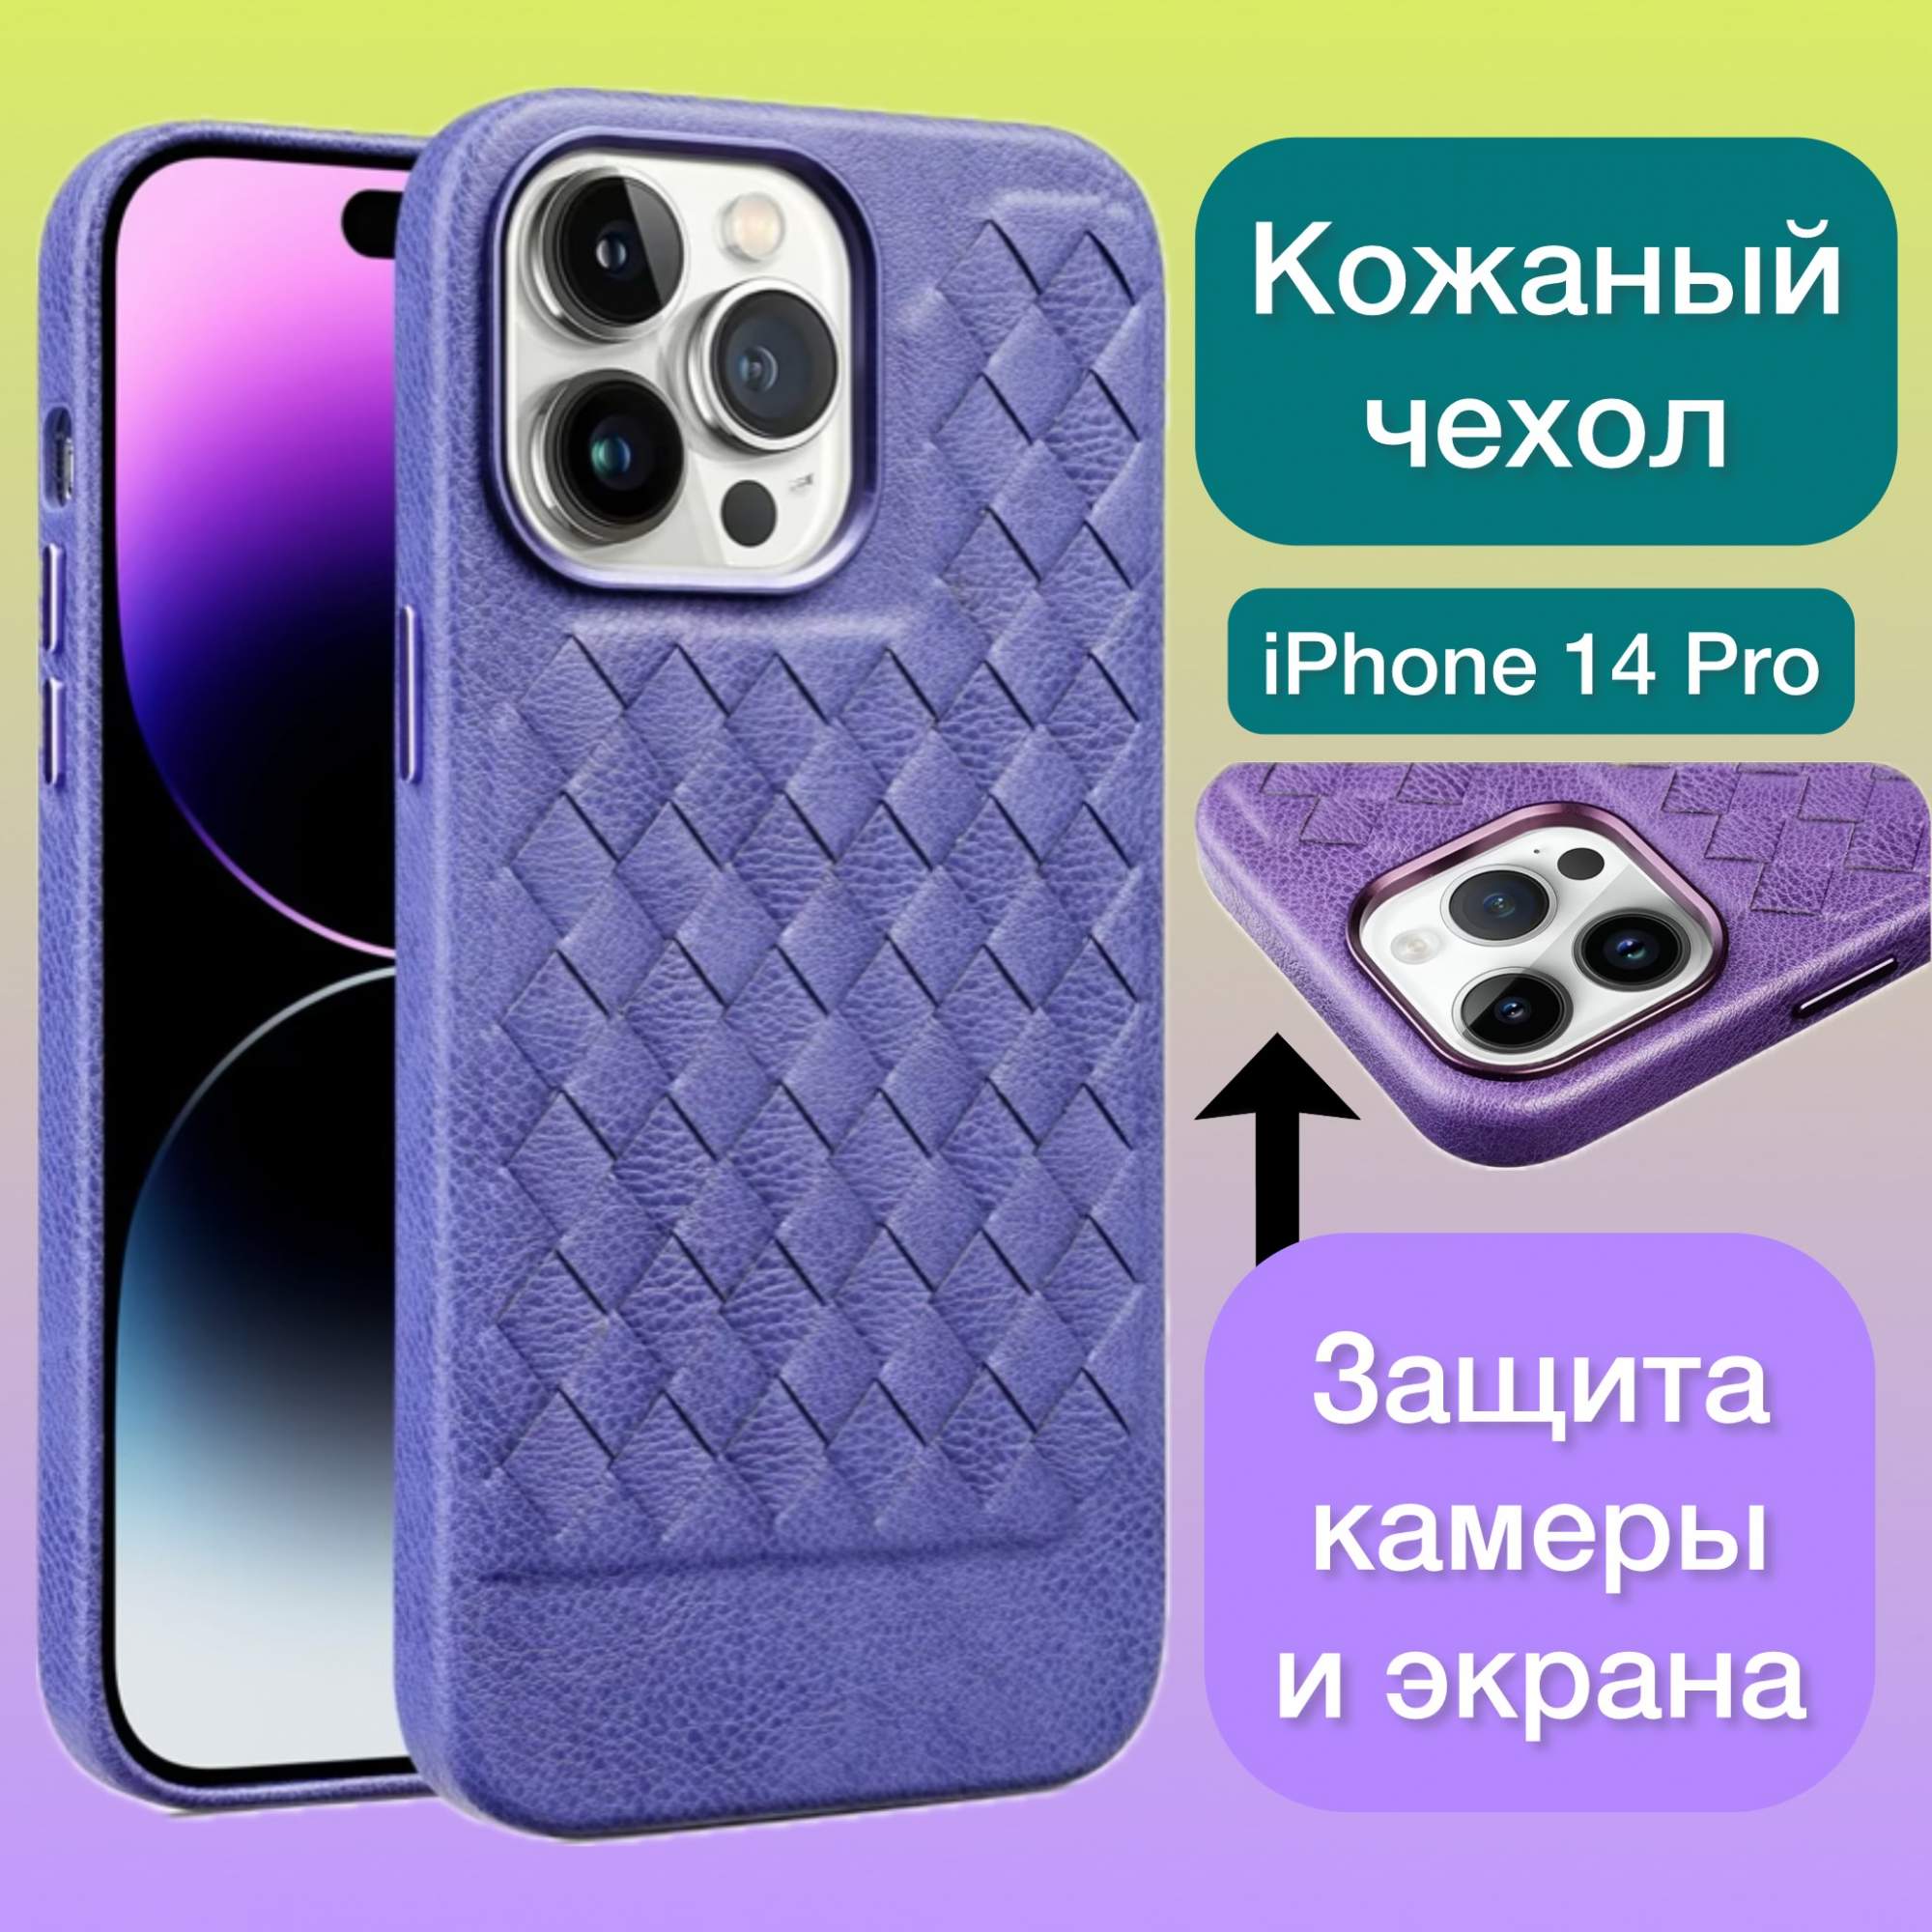 Кожаный чехол на iPhone 14 Pro плетеный Aimo для Айфон 14 Про цвет сиреневый